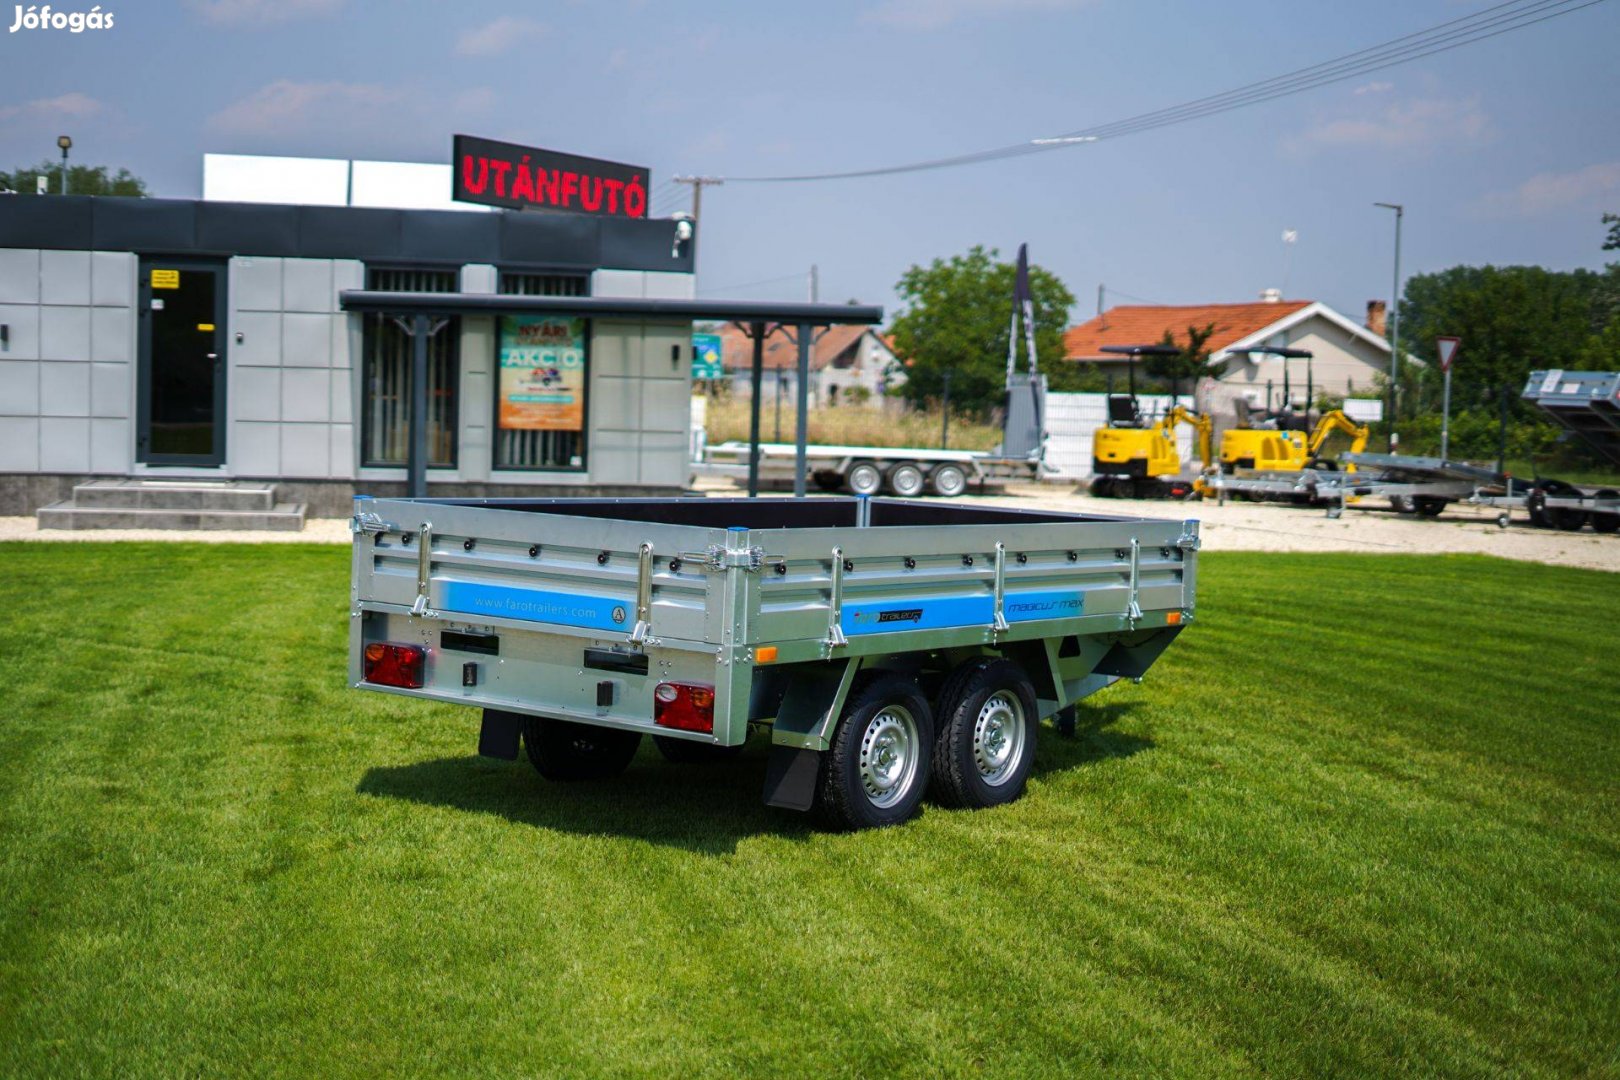 Szegeden új 2700 kg-os utánfutó eladó! 3 óra alatt rendszámmal